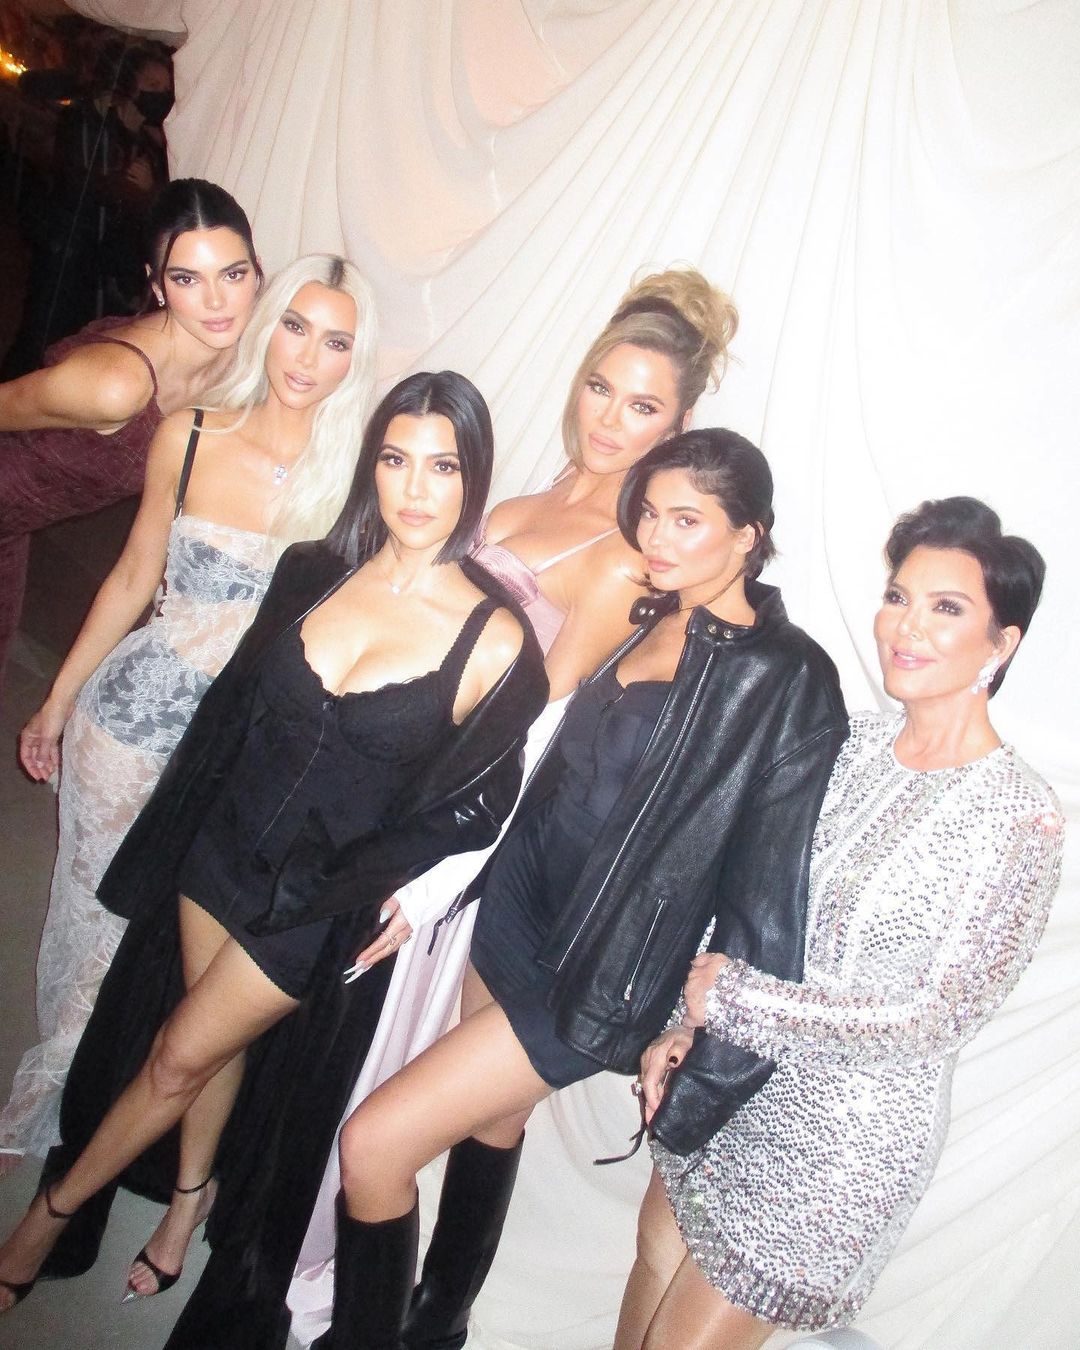 Η Khloé Kardashian έγινε πριγκίπισσα για την παραμυθένια καμπάνια «Lemme» της αδελφής της Kourtney